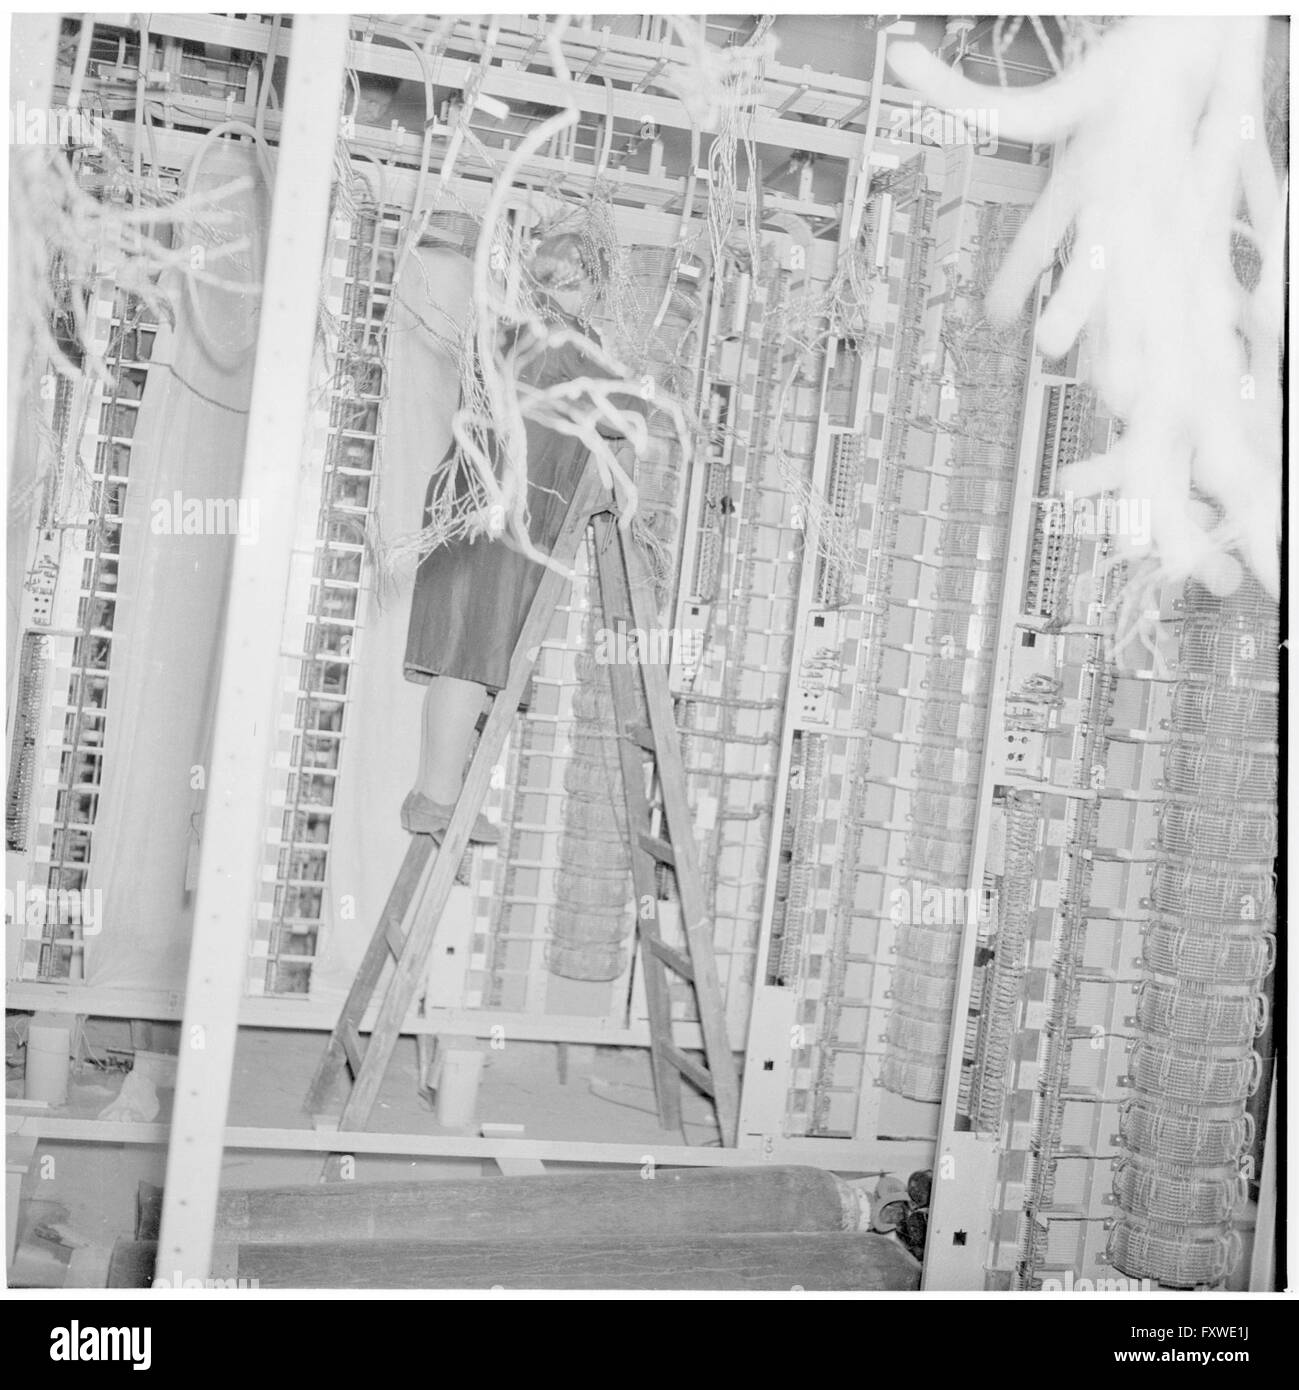 Telefonistin auf einer Leiter, technische Anlage ... Stock Photo